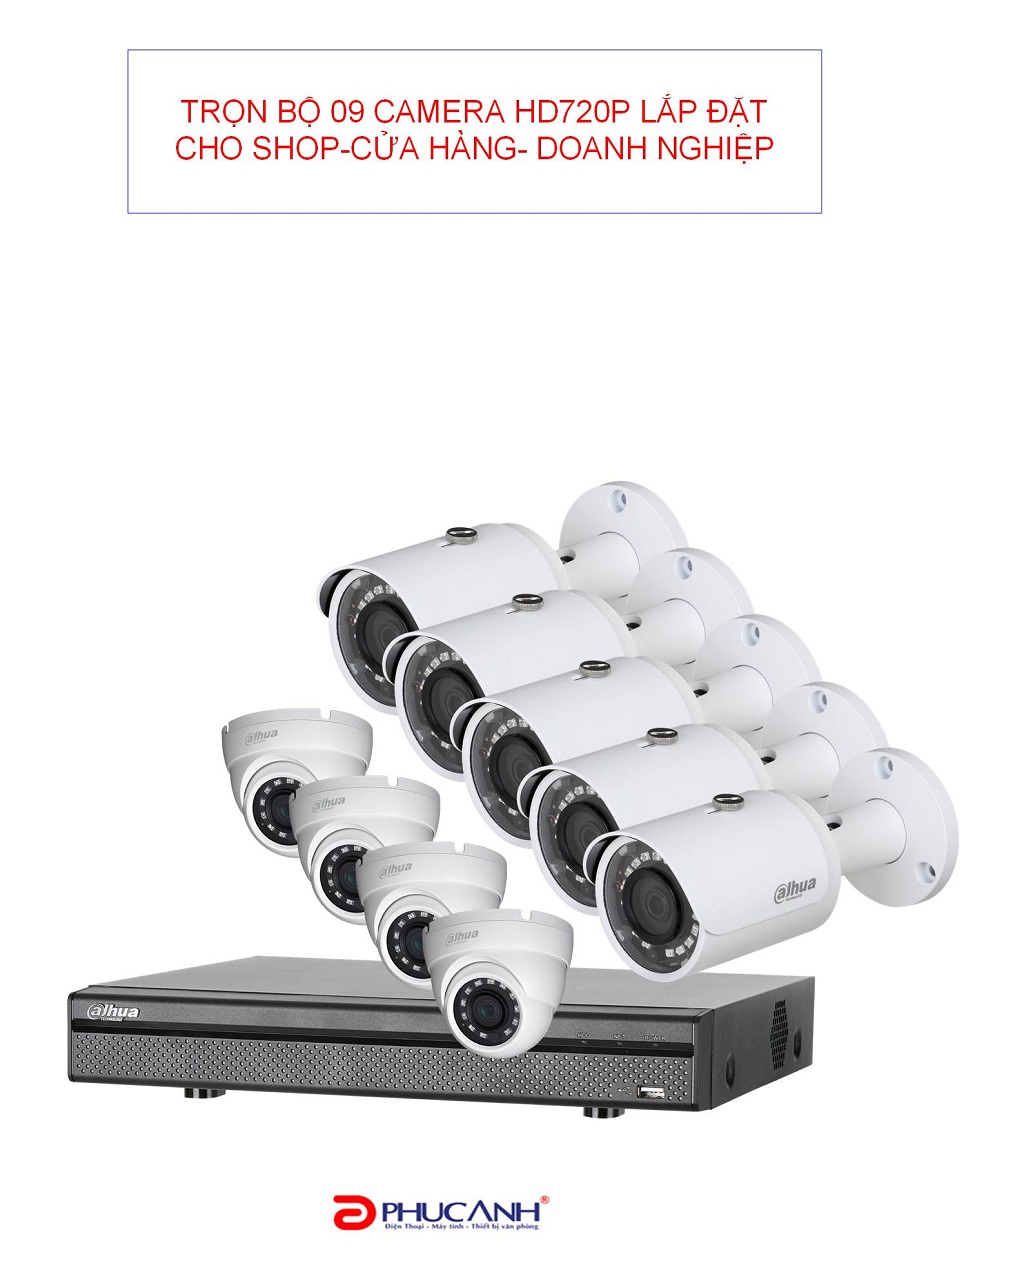 Trọn gói lắp đặt 09 camera analog 1.0 MP cho Shop-Cửa hàng- Công ty